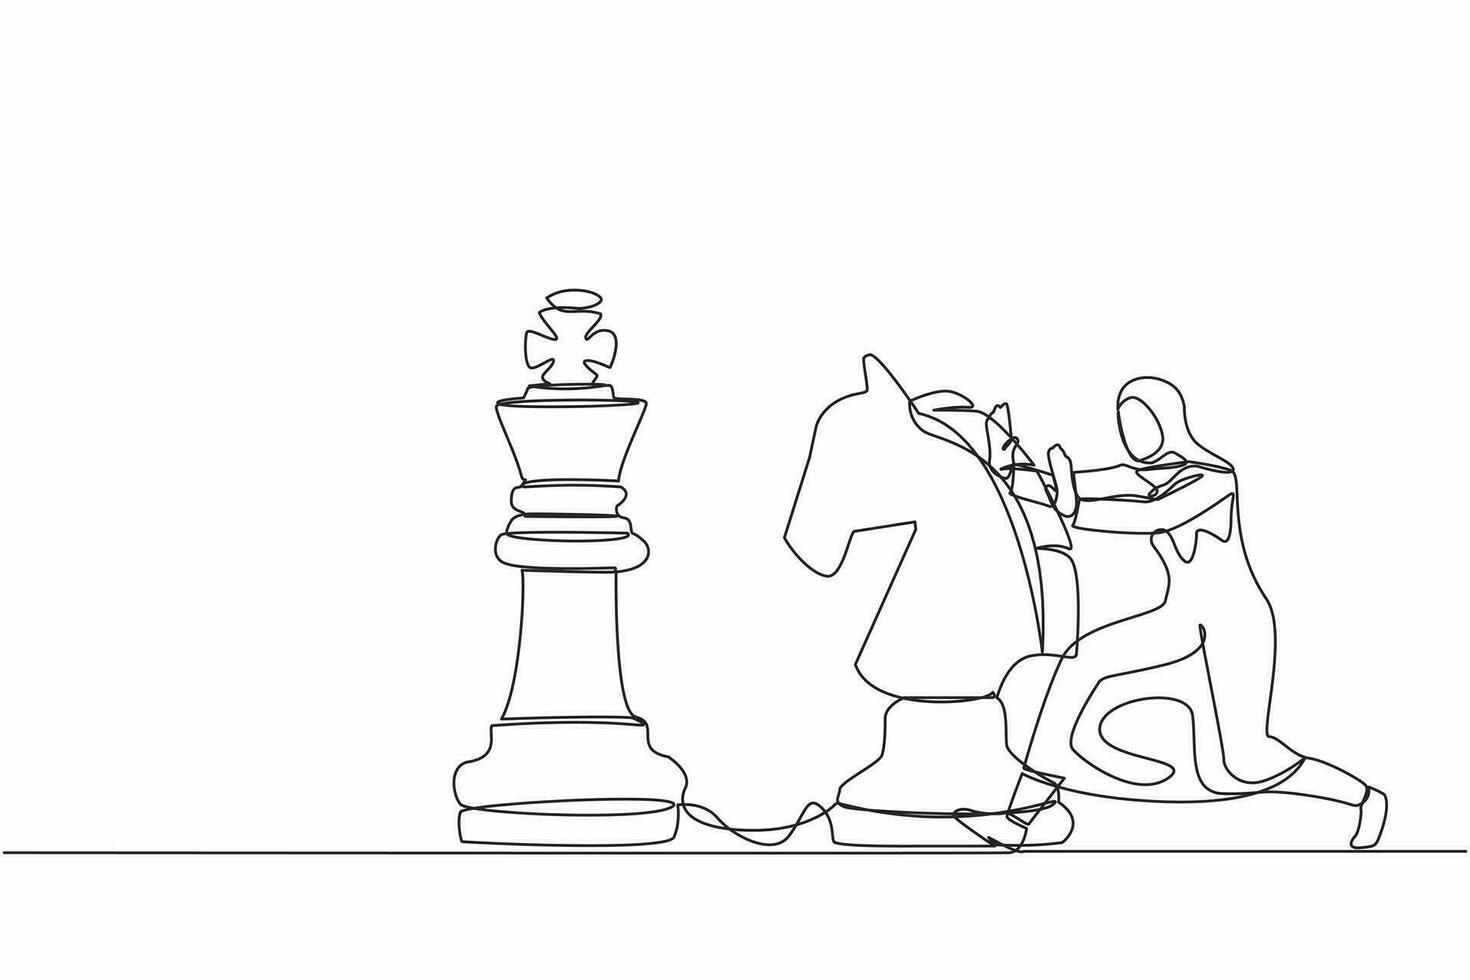 Single kontinuierlich Linie Zeichnung attraktiv arabisch Geschäftsfrau drücken enorm Pferd Schach Stück zu schlagen König. strategisch Denken und Clever Bewegung im Geschäft abspielen Spiel. einer Linie zeichnen Design Vektor Illustration